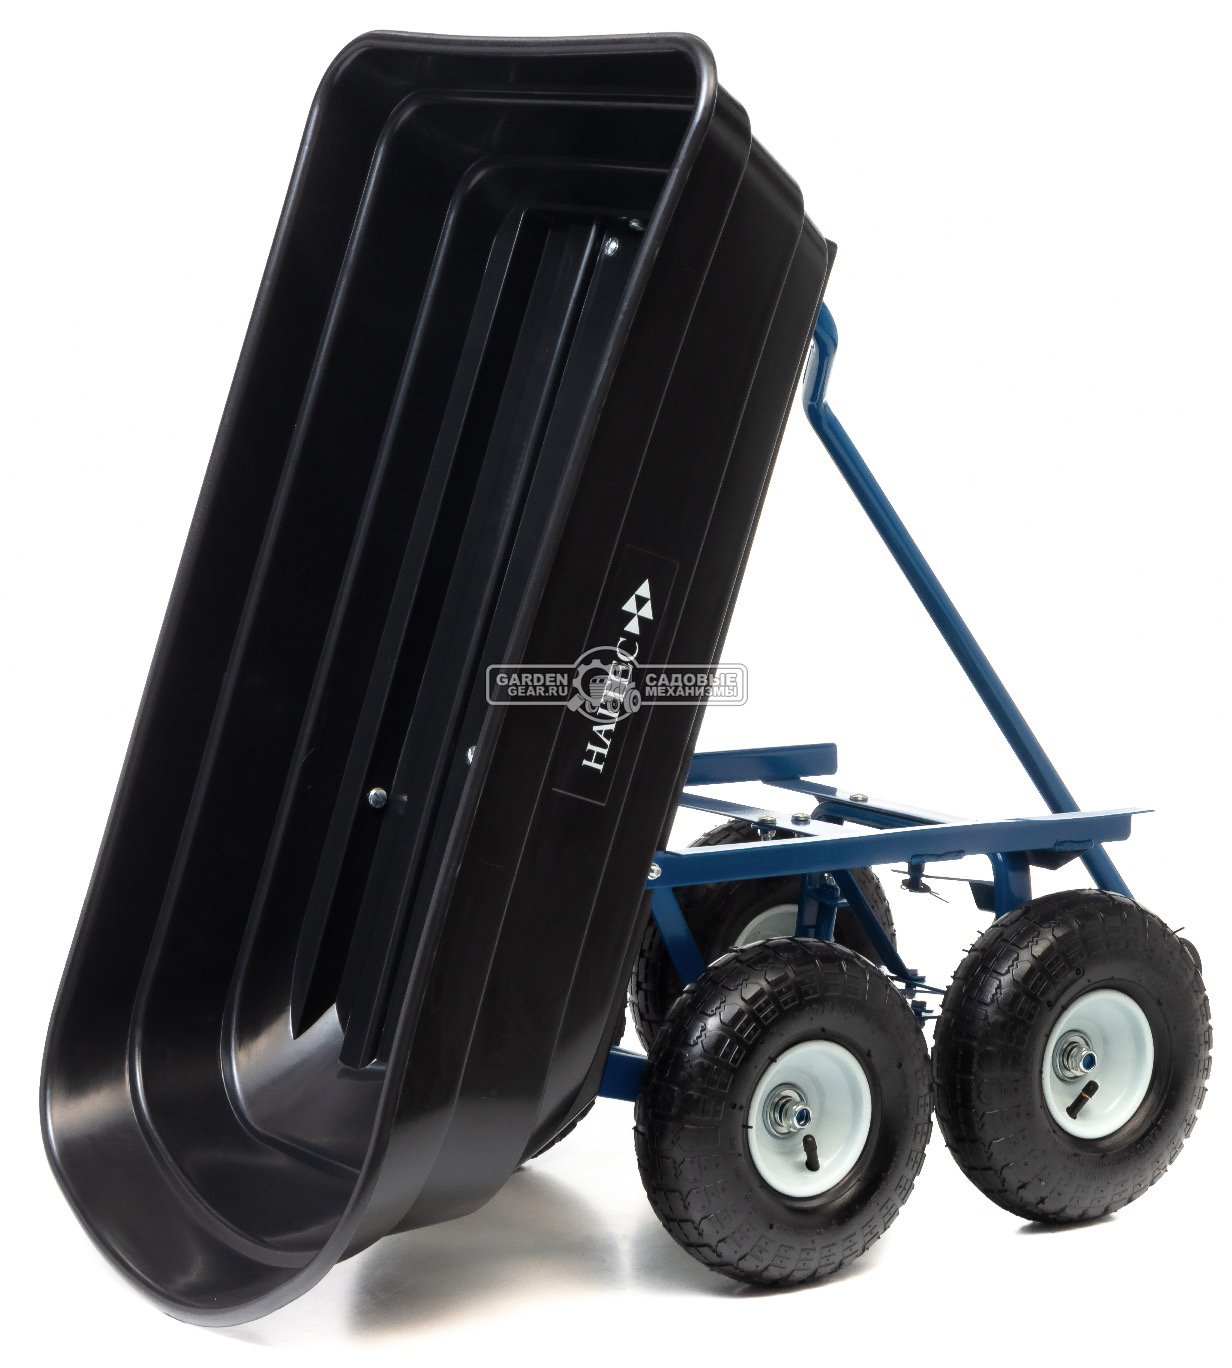 Тележка садовая Haitec HT-KW100 с механизмом опрокидывания (4 колеса, пластик. кузов 85x18x46,5 см., грузоподъемность 200 кг, объем 100 л, 13,9 кг.)